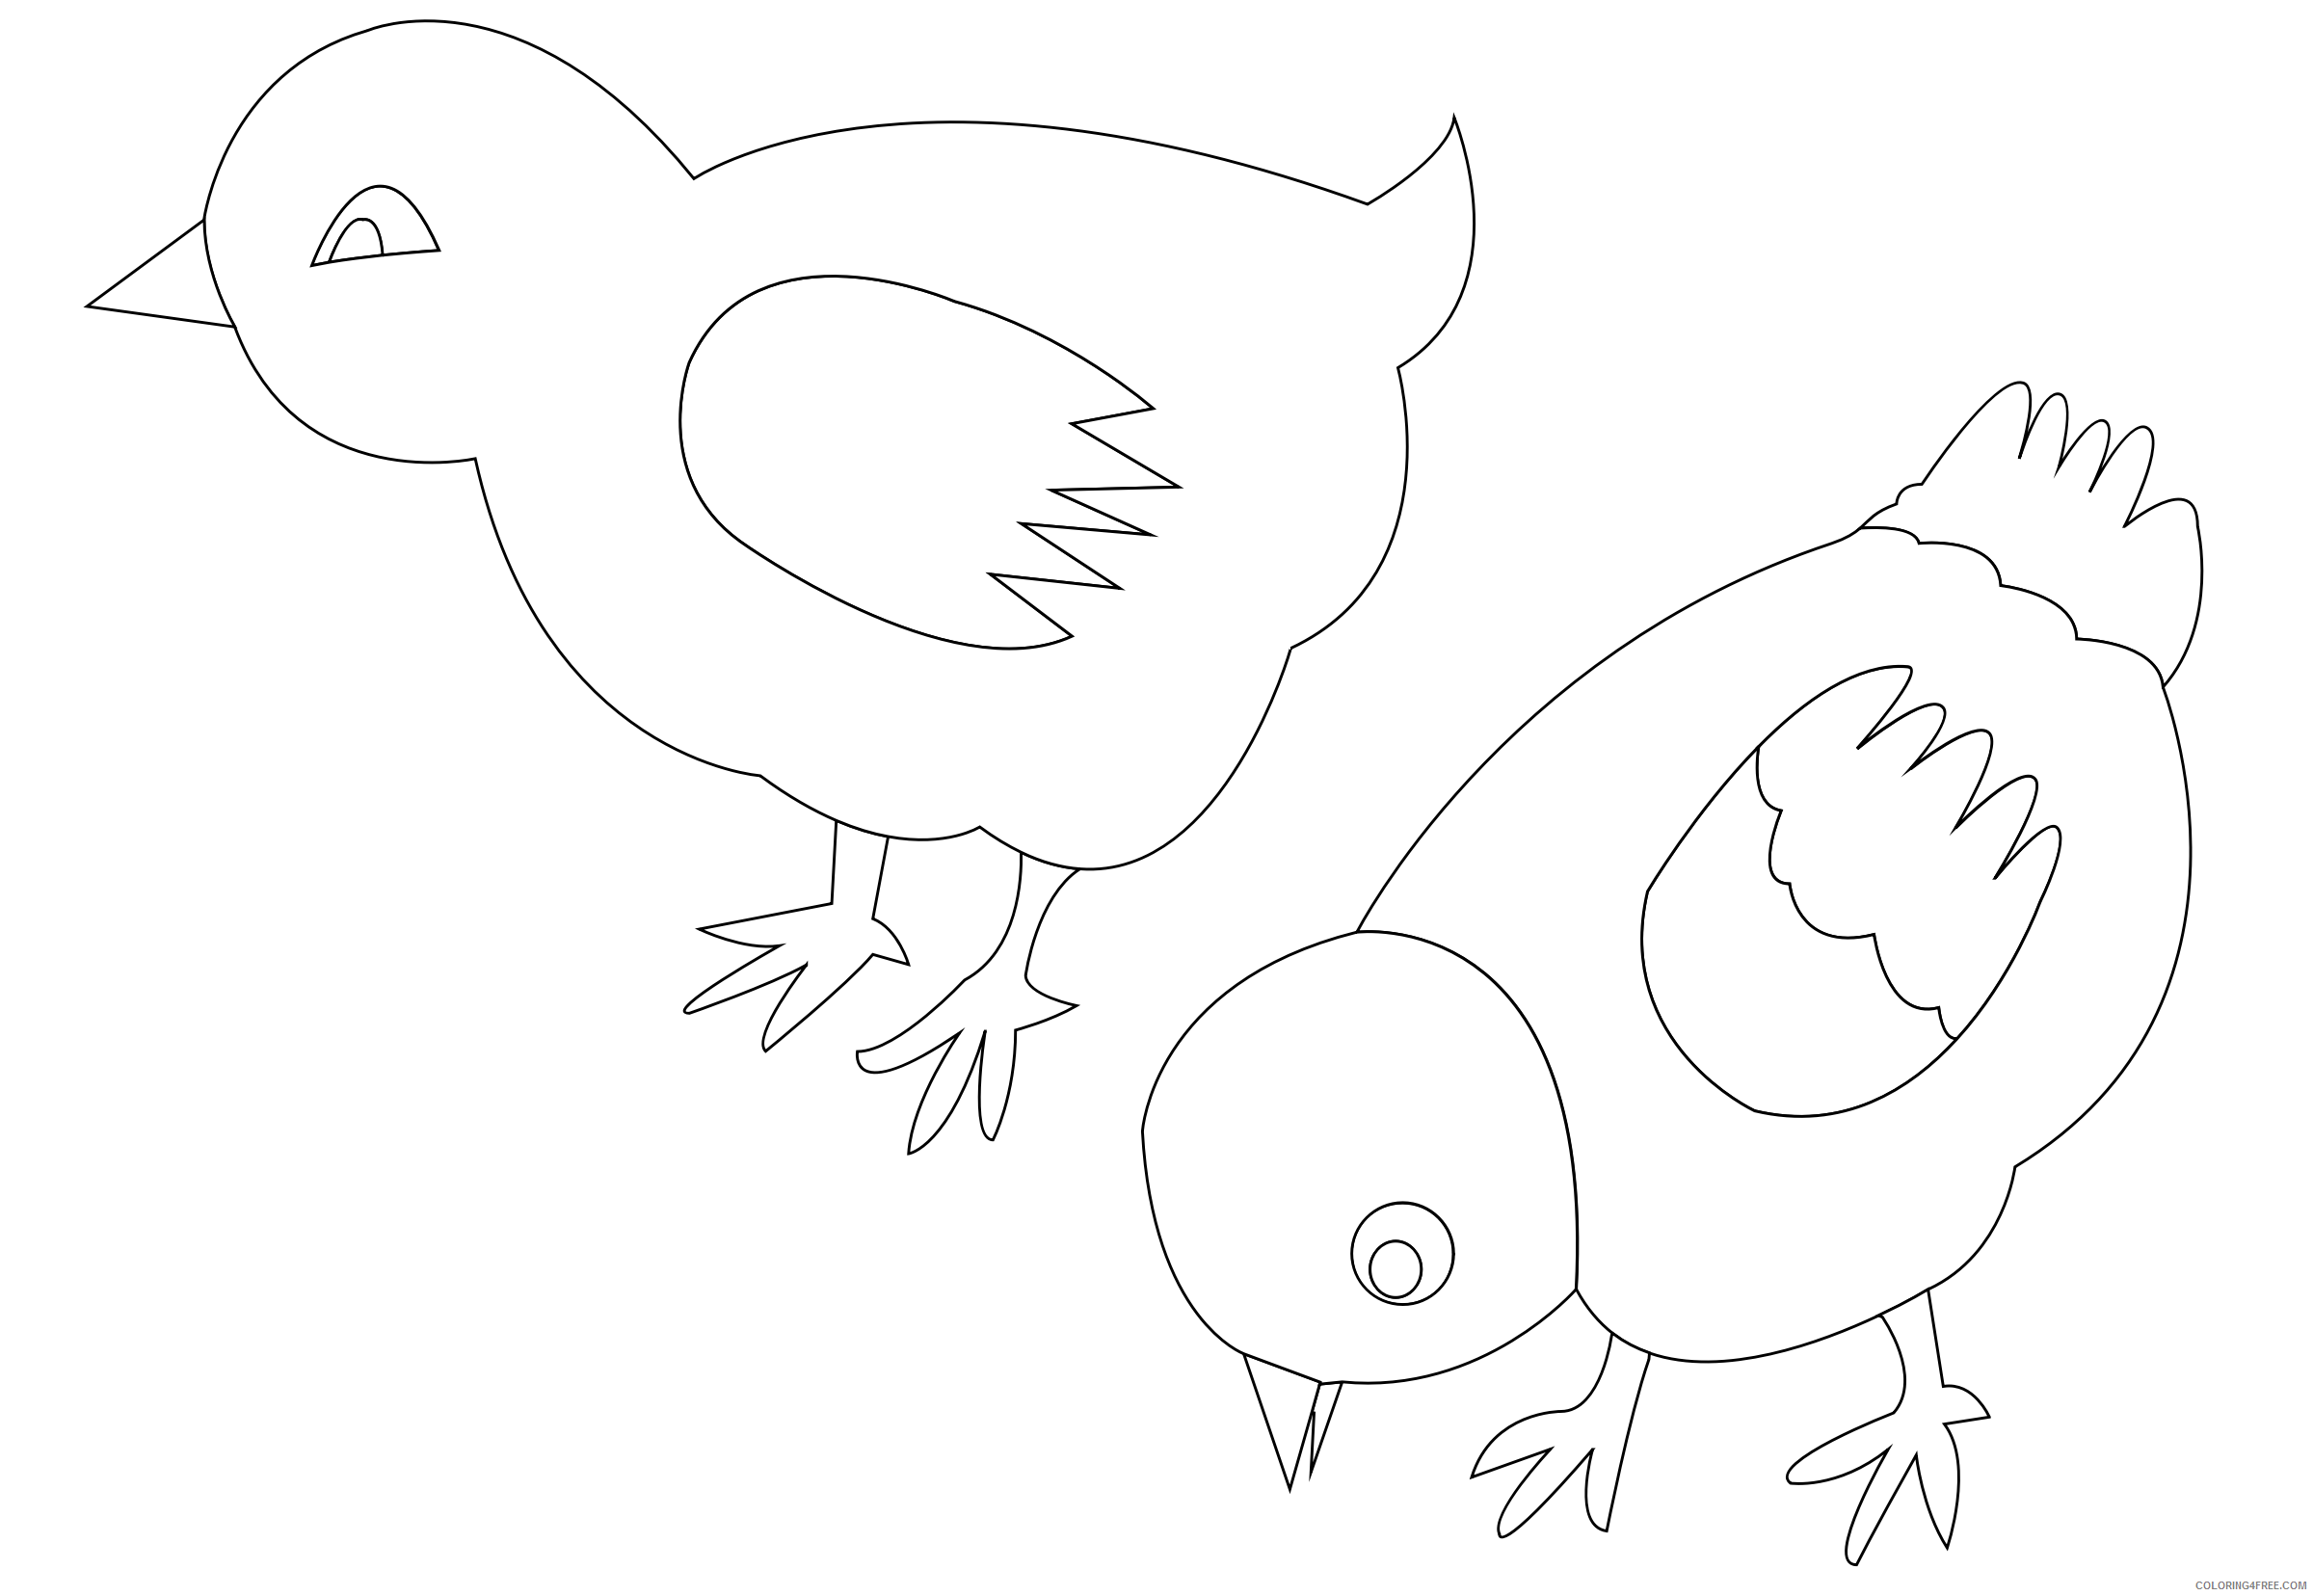 Рисование младшая группа шаблоны. Трафареты птиц для рисования. Цыпленок. Раскраски. Трафареты птиц для рисования для детей. Трафарет цыпленка для рисования.